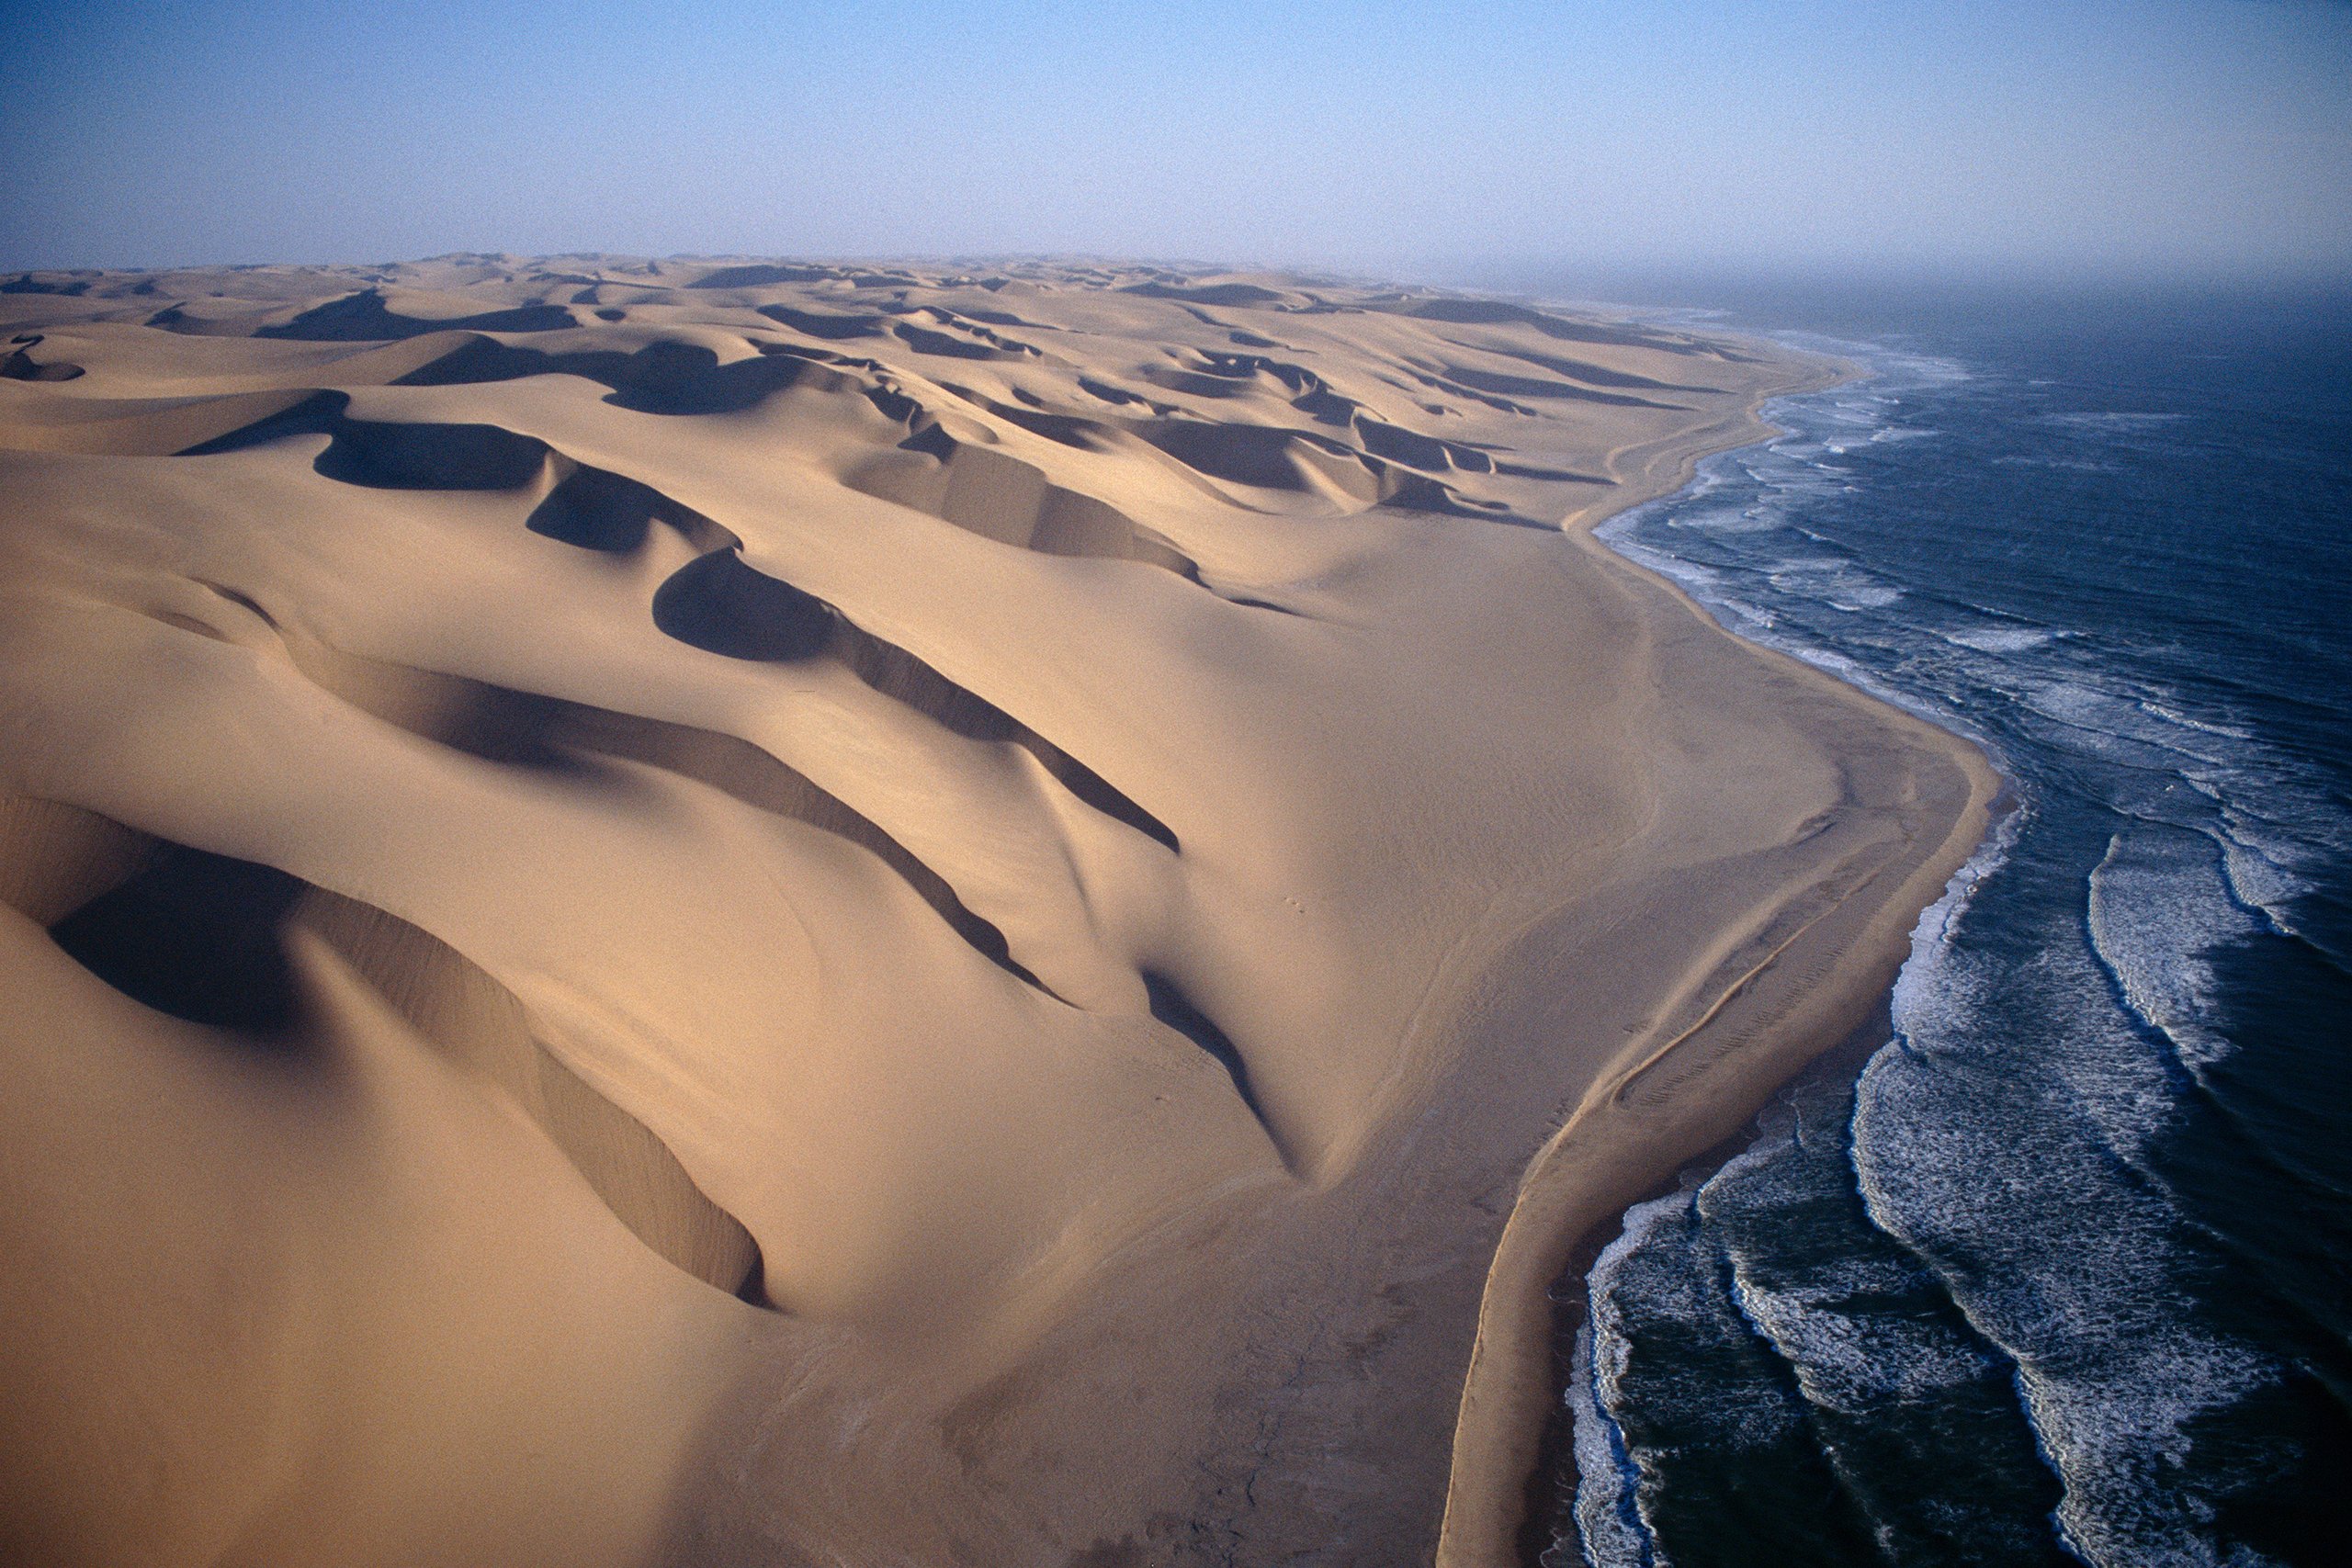 Африка береговая линия моря. Намибия берег скелетов (Skeleton Coast). Намибия пустыня Намиб. Пустыня Намиб дюны. Побережье пустыни Намиб.